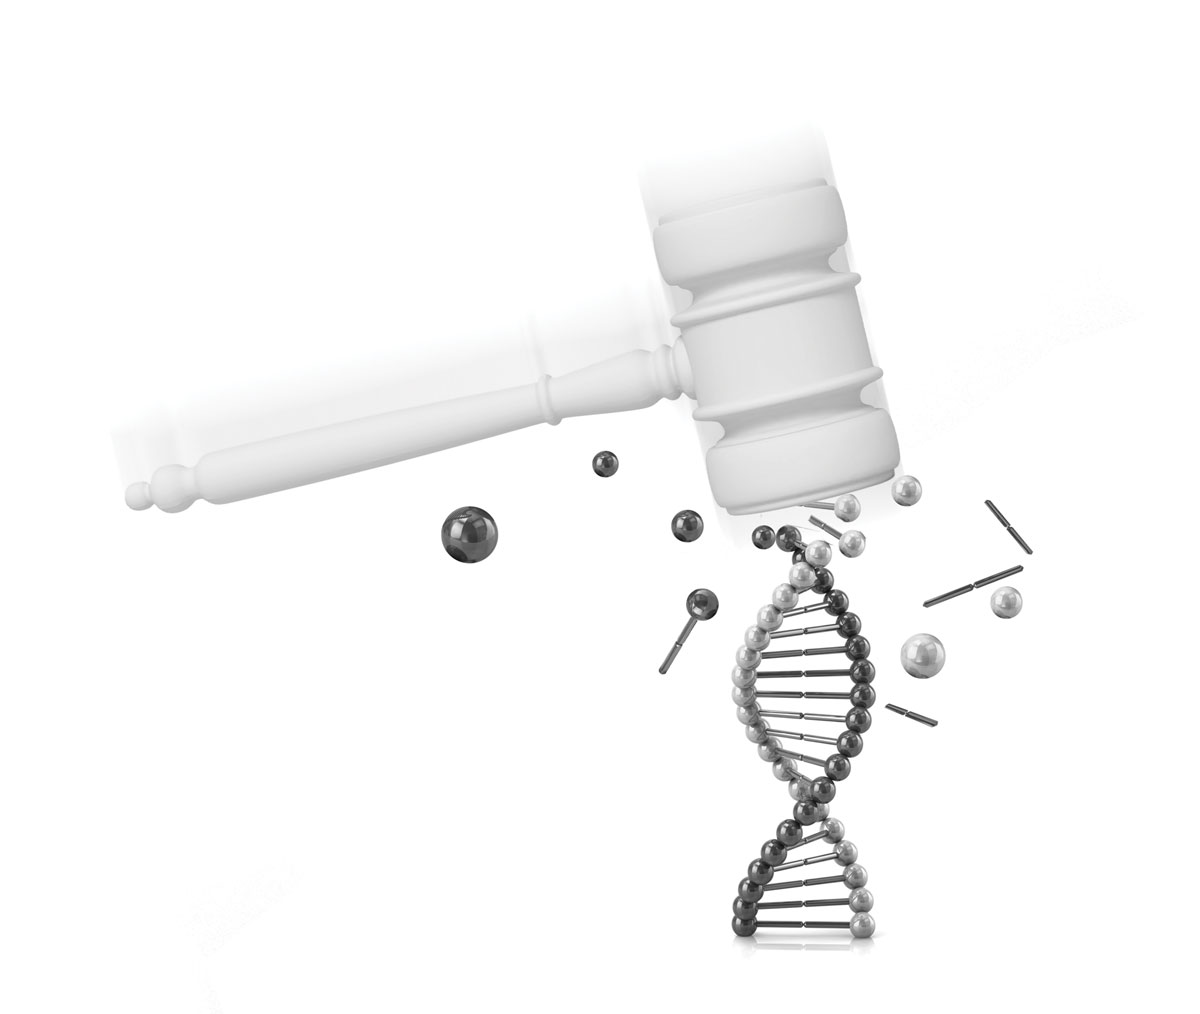 DNA evidence, Shutterstock